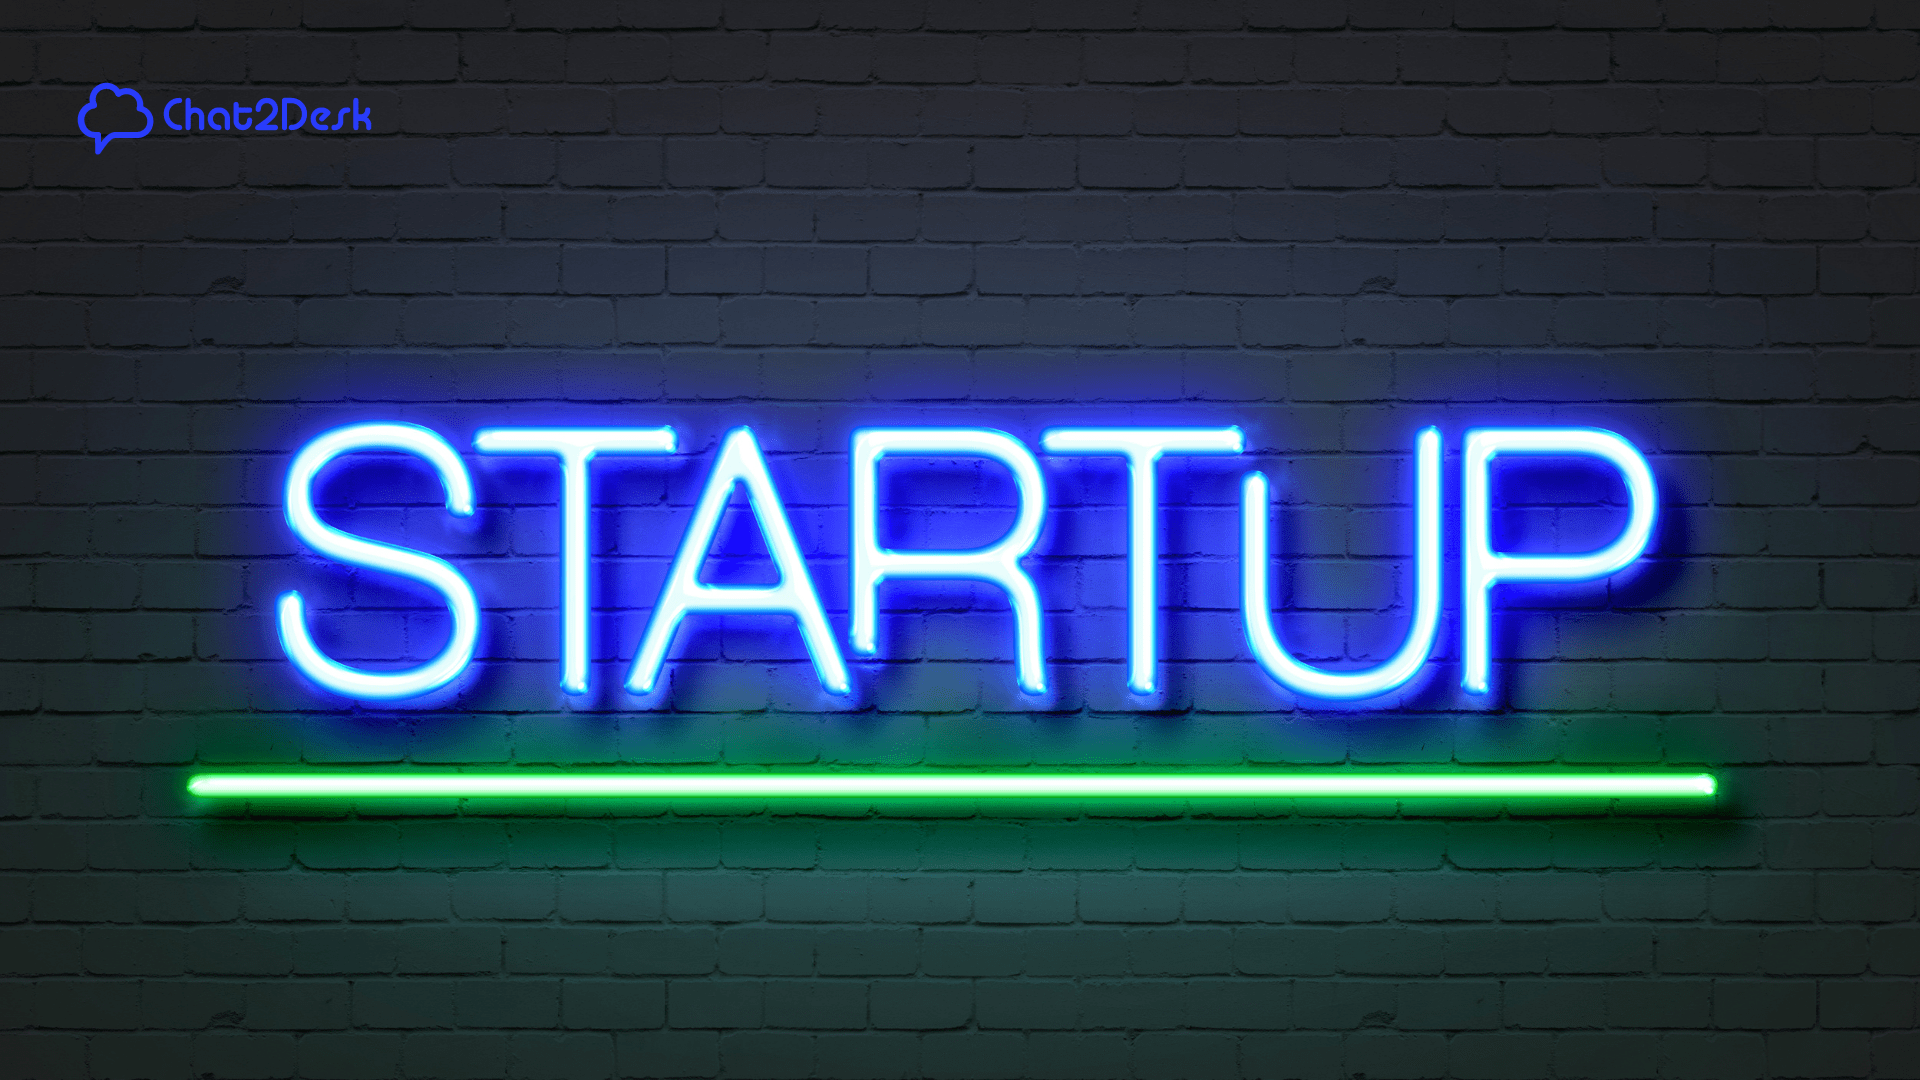 Letreiro em neon das startups